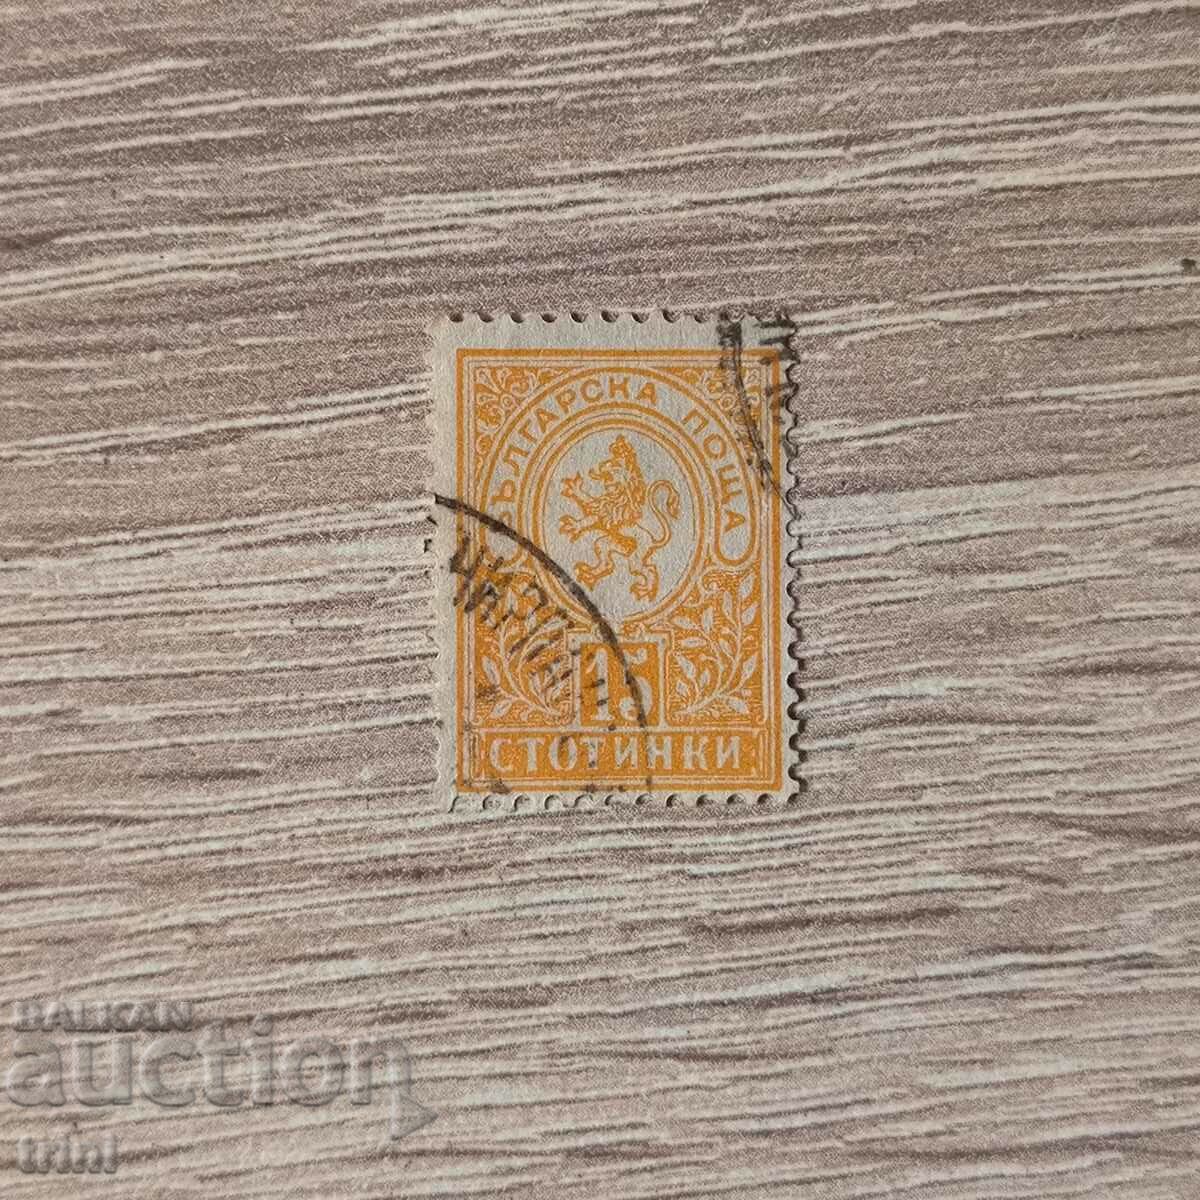 Βουλγαρία Μικρό λιοντάρι 1889 15 σεντς